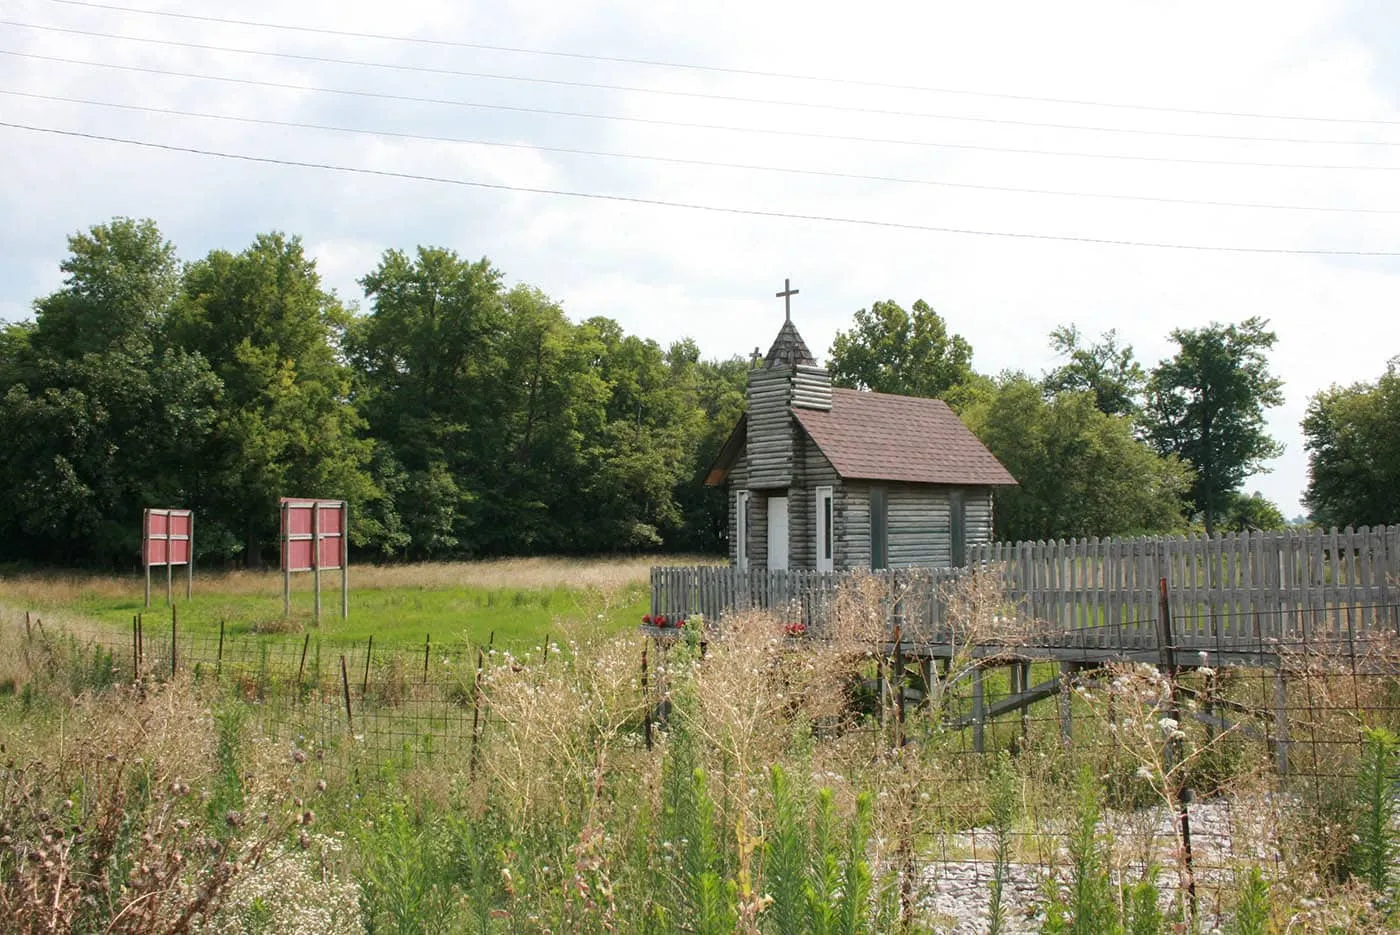 The Traveler's Chapel - a tiny church in Nashville, Illinois